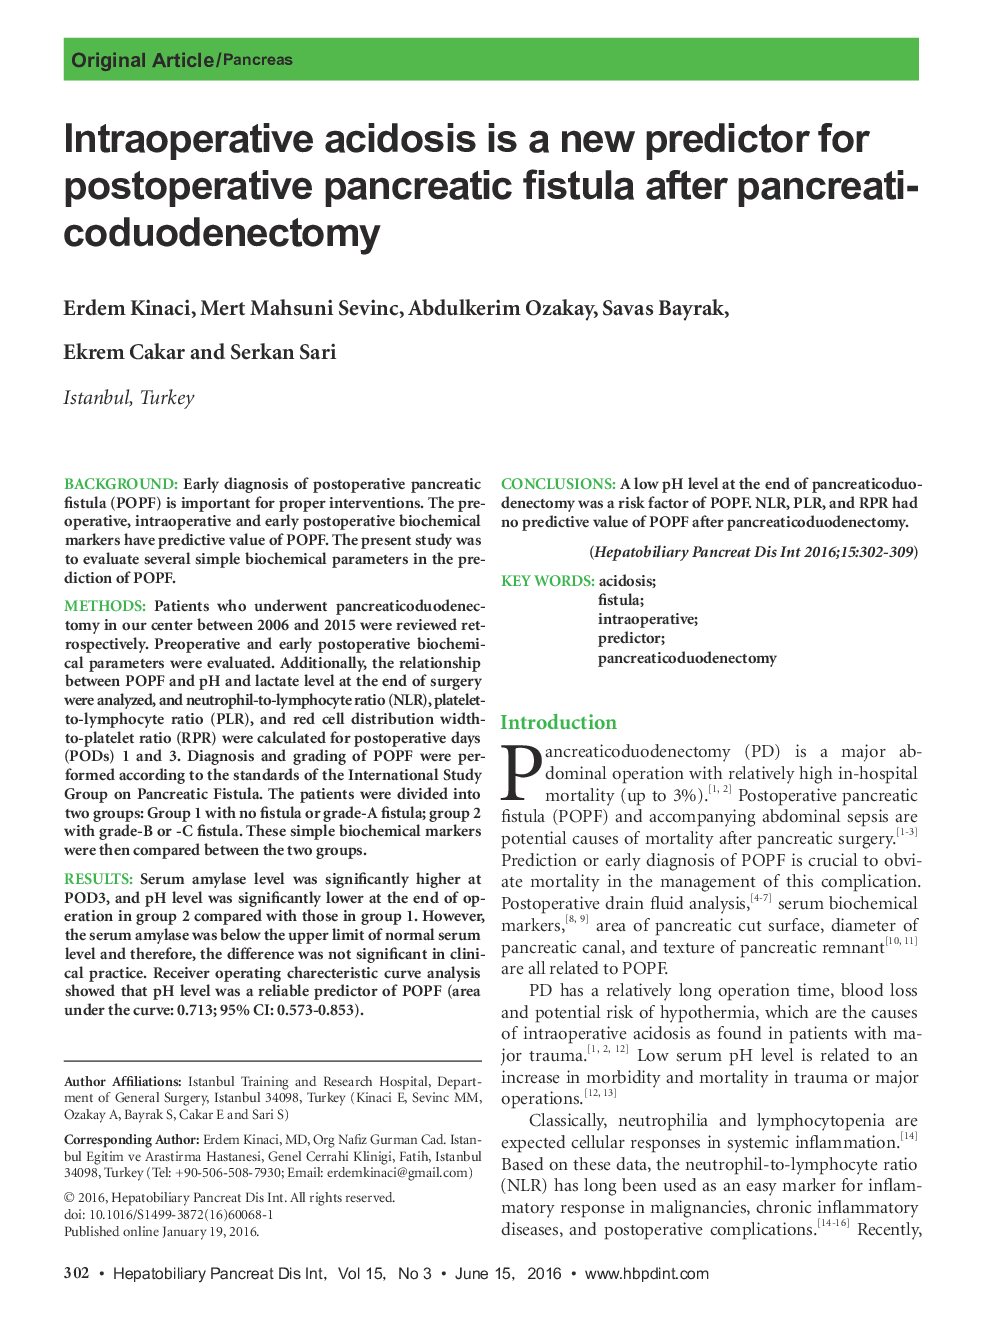 اسیدوز داخل تراشه یک پیش بینی جدید برای فیستول پانکراس پس از عمل پس از پانکراتیاودوژنکتومی 